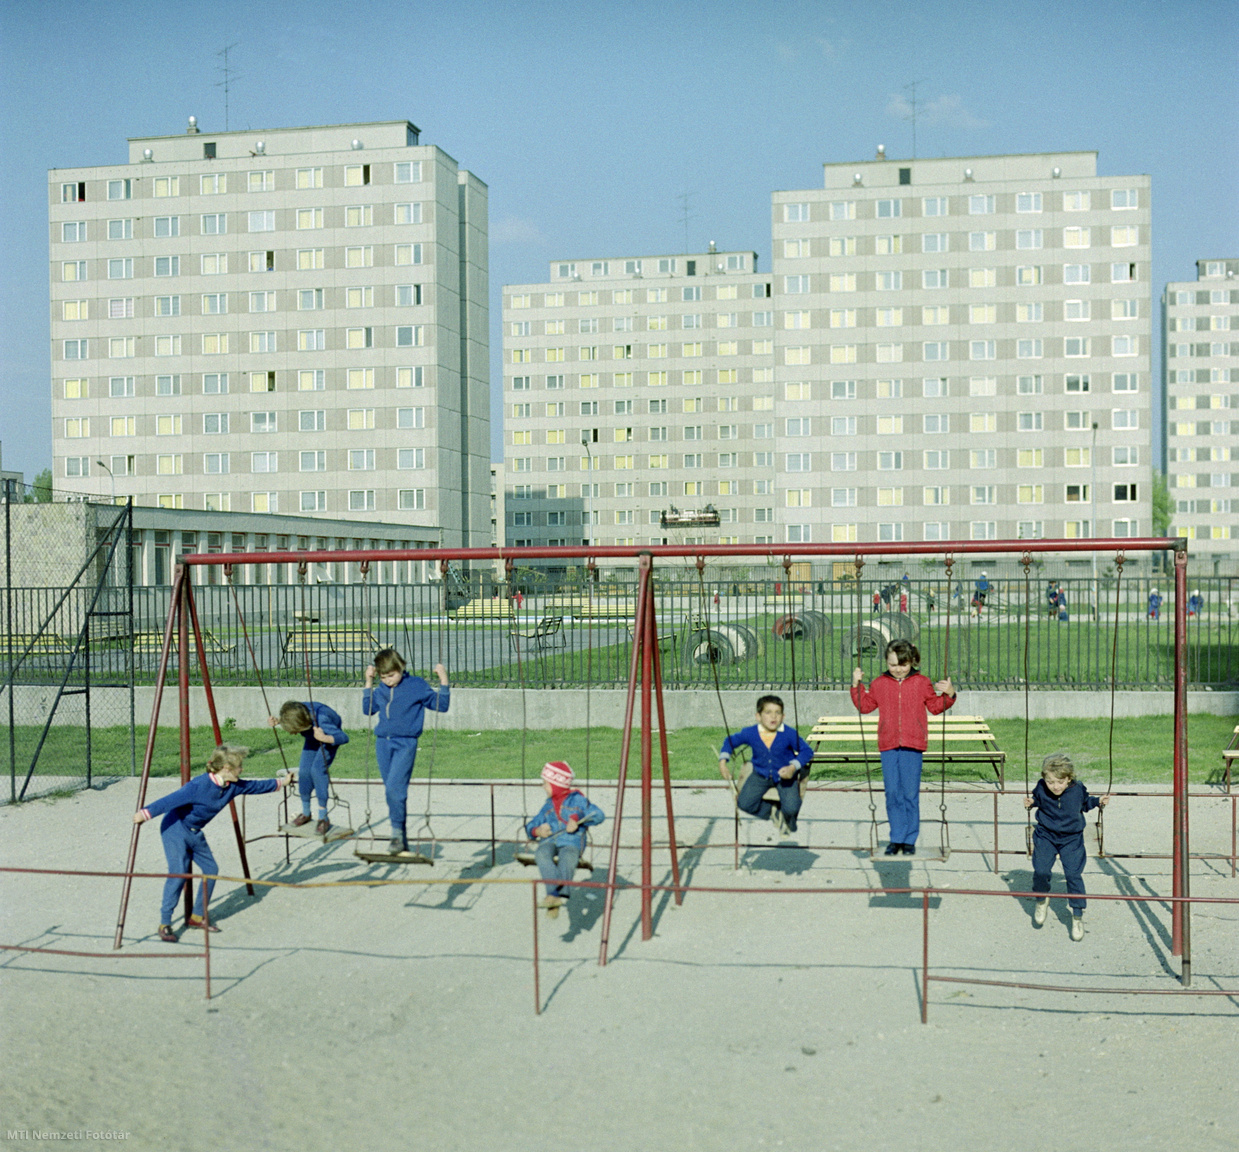 Oroszlány, 1974. április 20. Gyerekek hintáznak a játszótéren Oroszlány új lakótelepén.